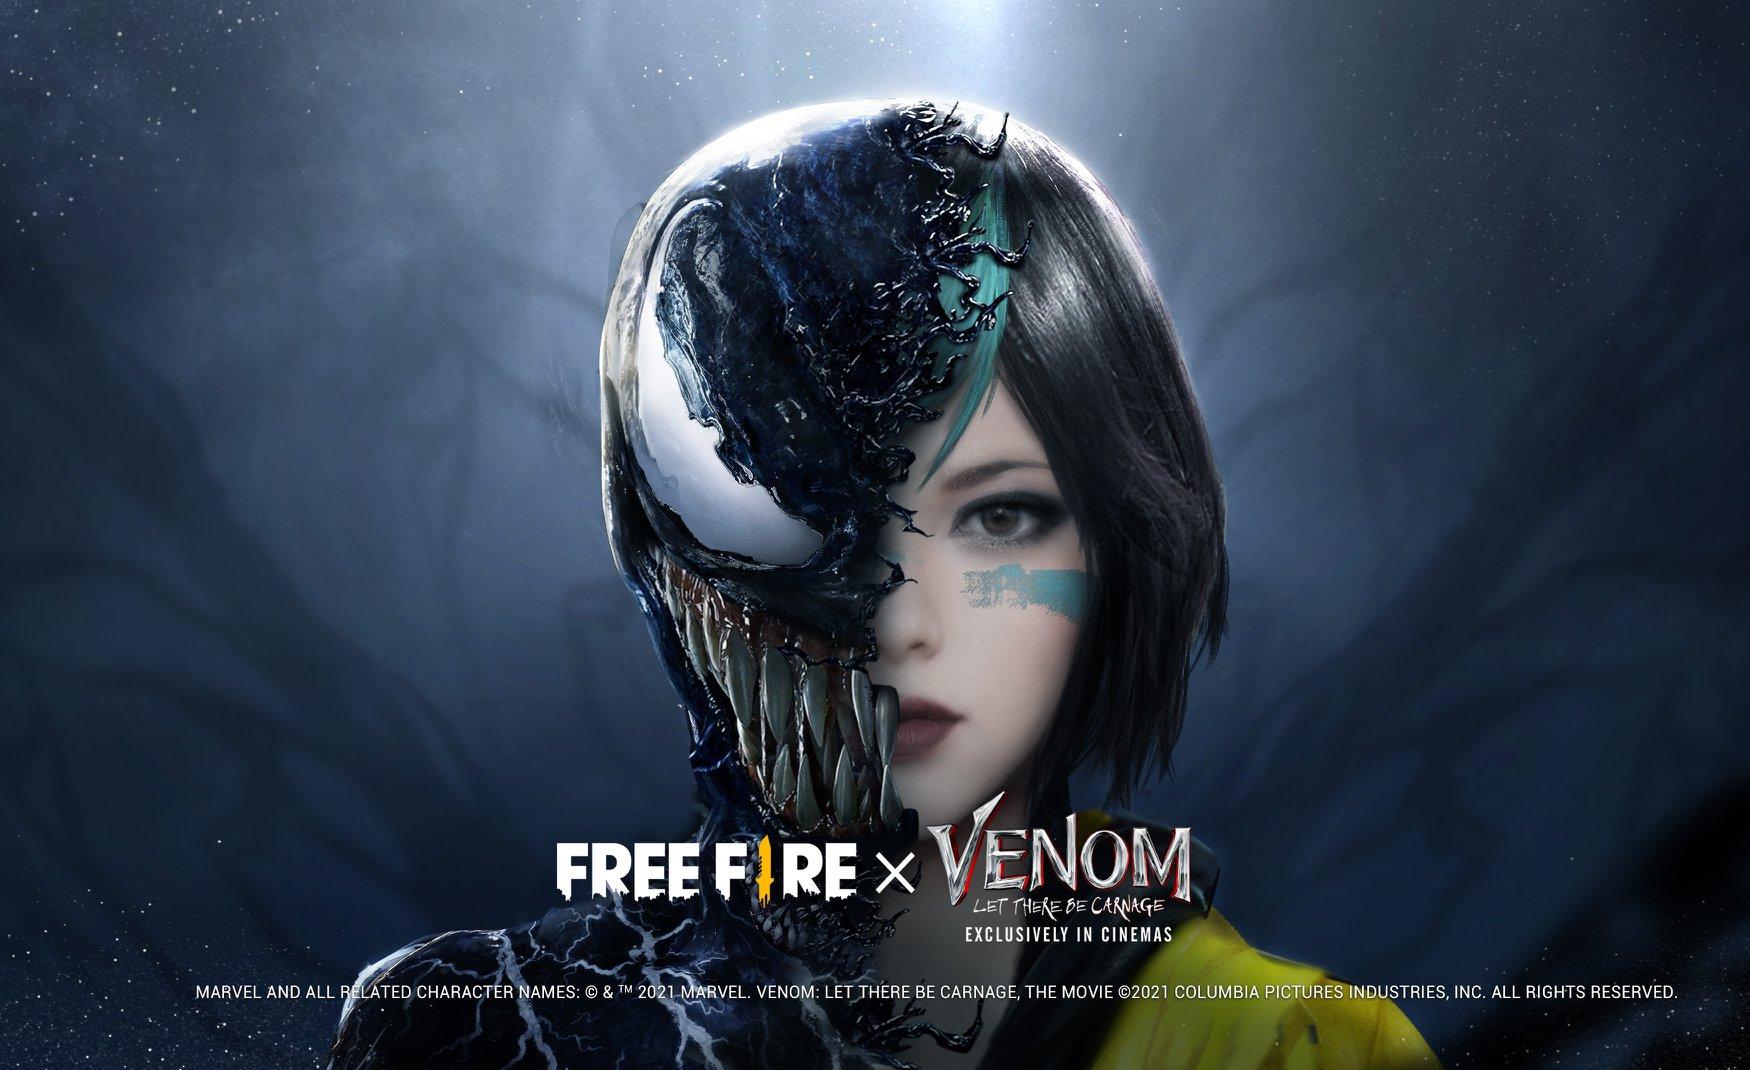 Wallpapers Garena Free Fire: papeis de parede com a parceria do filme Venom